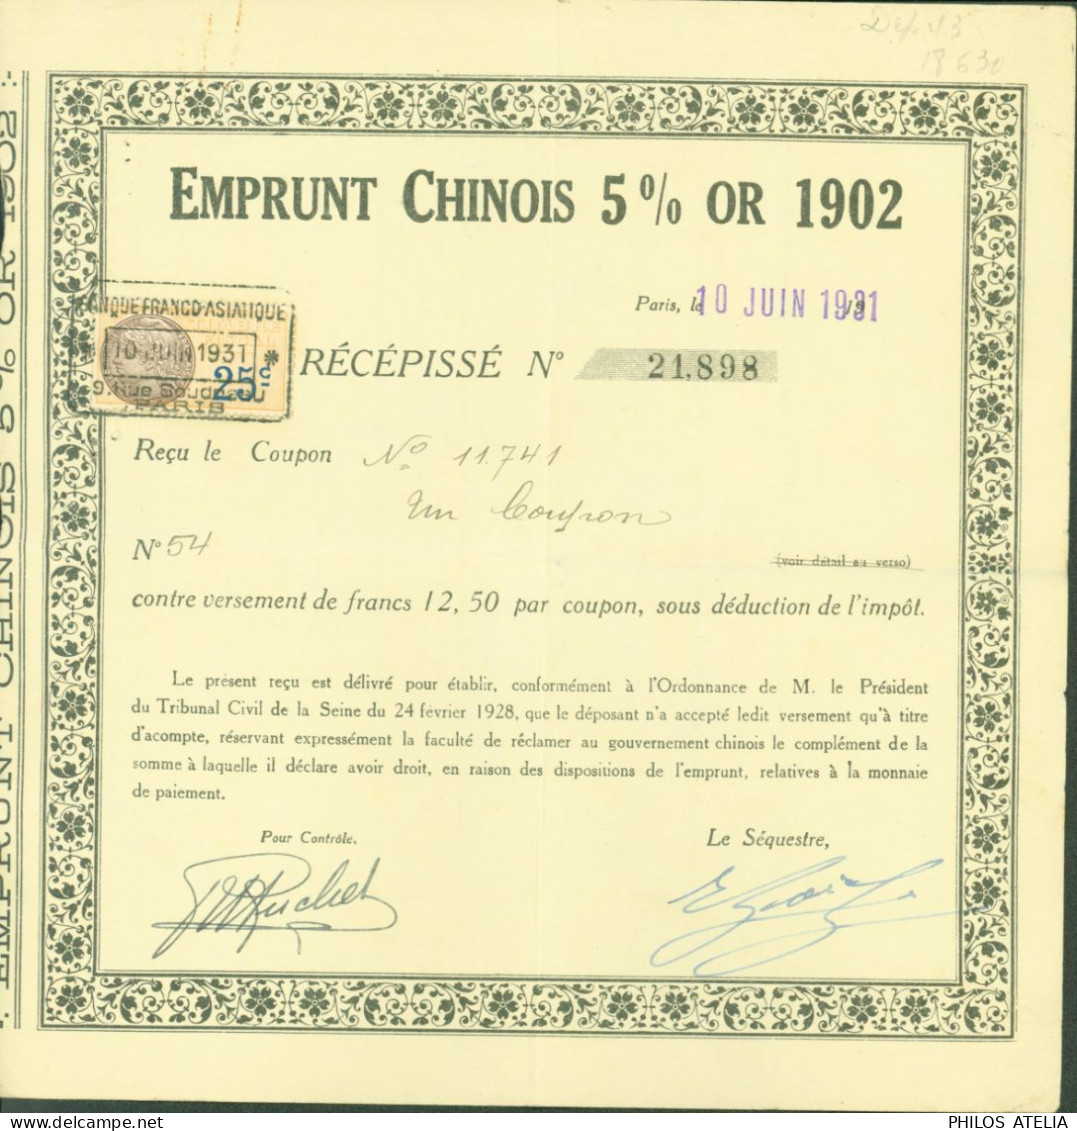 Obligation Emprunt Chinois 5% Or 1902 Paris 10 JUIN 1931 Timbre Fiscal 25ct Daucy Reçu Coupon Contre Versement - Briefe U. Dokumente